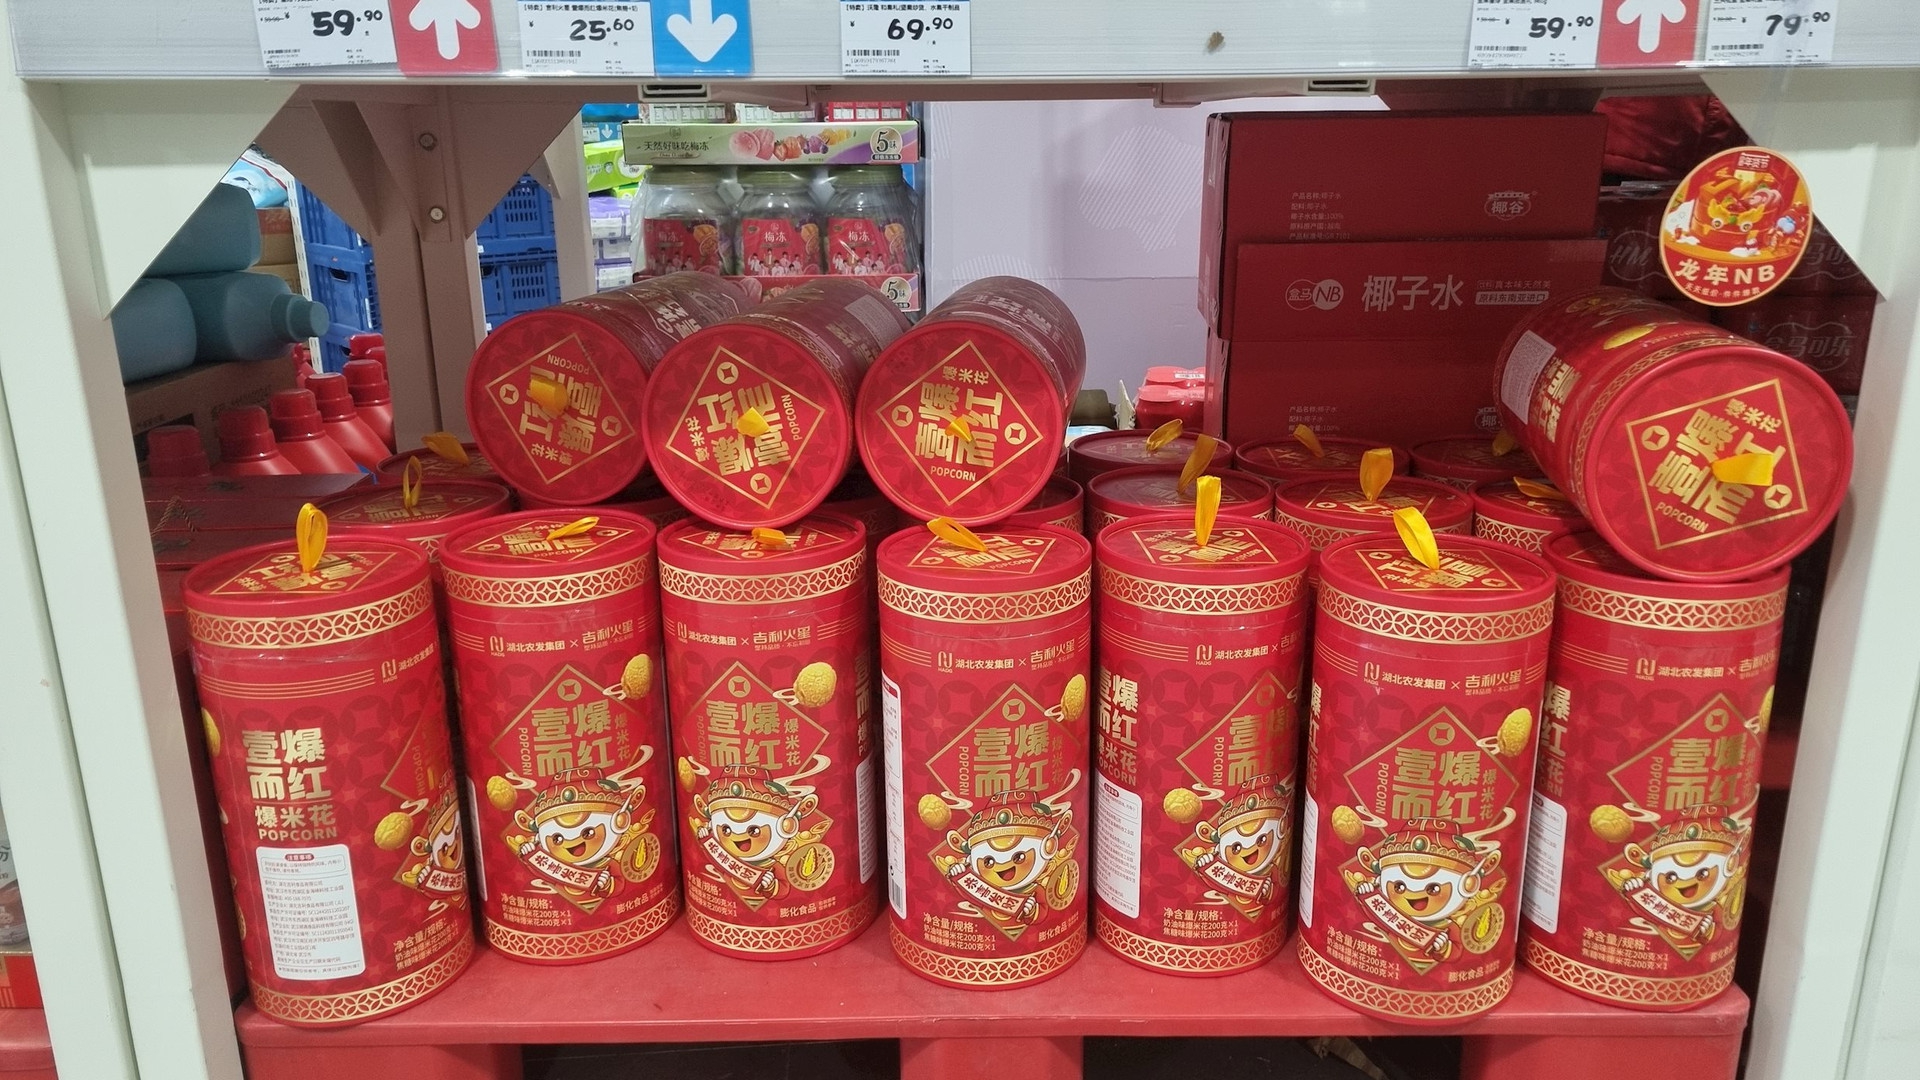 Du học sinh Việt trải nghiệm đi siêu thị ngày 29 Tết tại Trung Quốc: Bất ngờ sản phẩm “cháy hàng” nhanh nhất không phải là hoa quả, kẹo bánh- Ảnh 1.